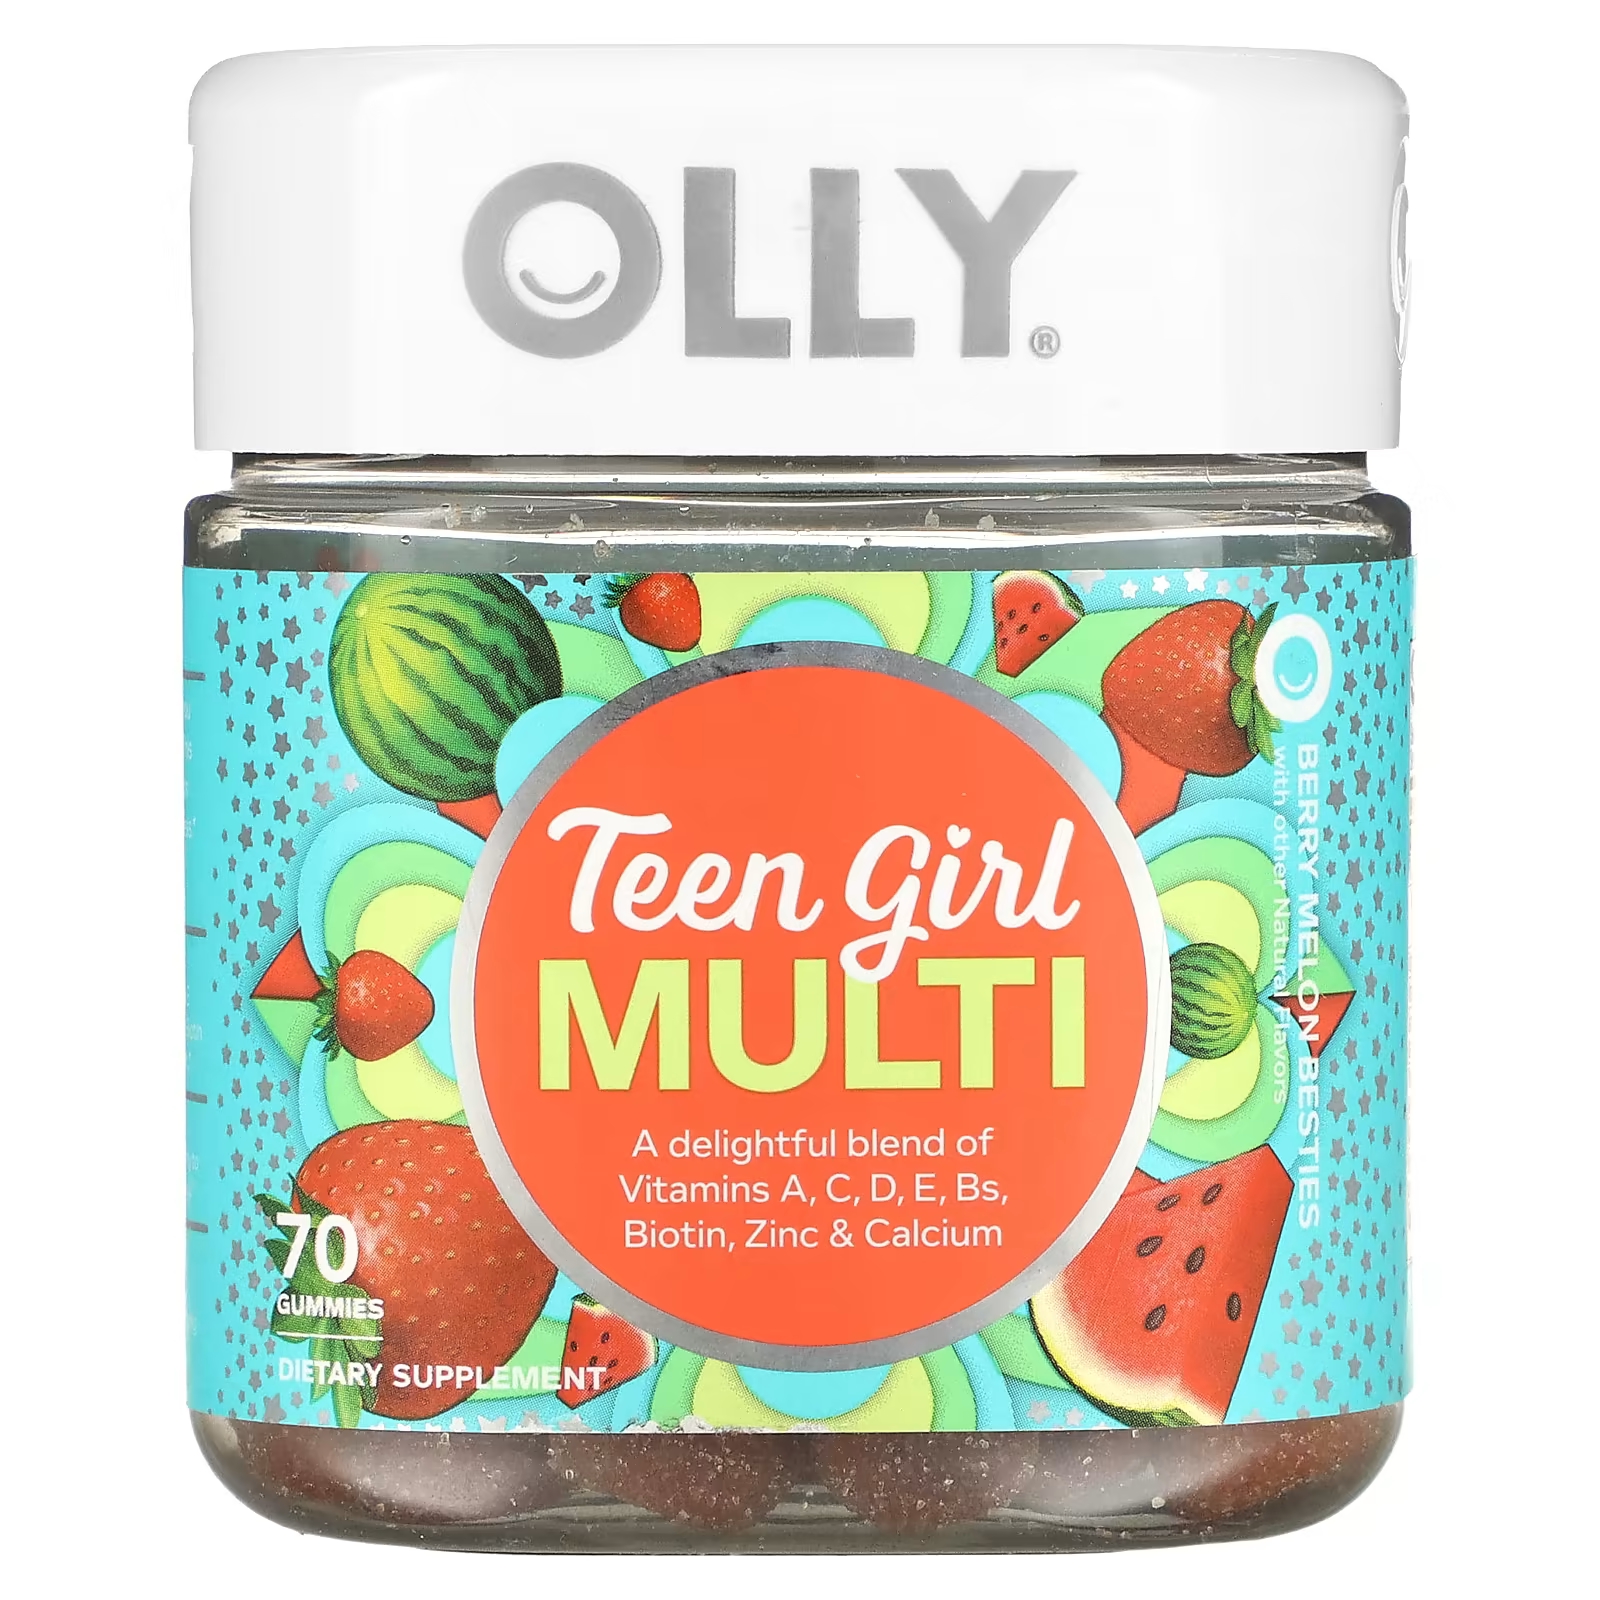 Пищевая добавка Olly Besties с ягодами и дыней, 70 жевательных конфет olly teen girl multi berry melon besties 70 жевательных таблеток